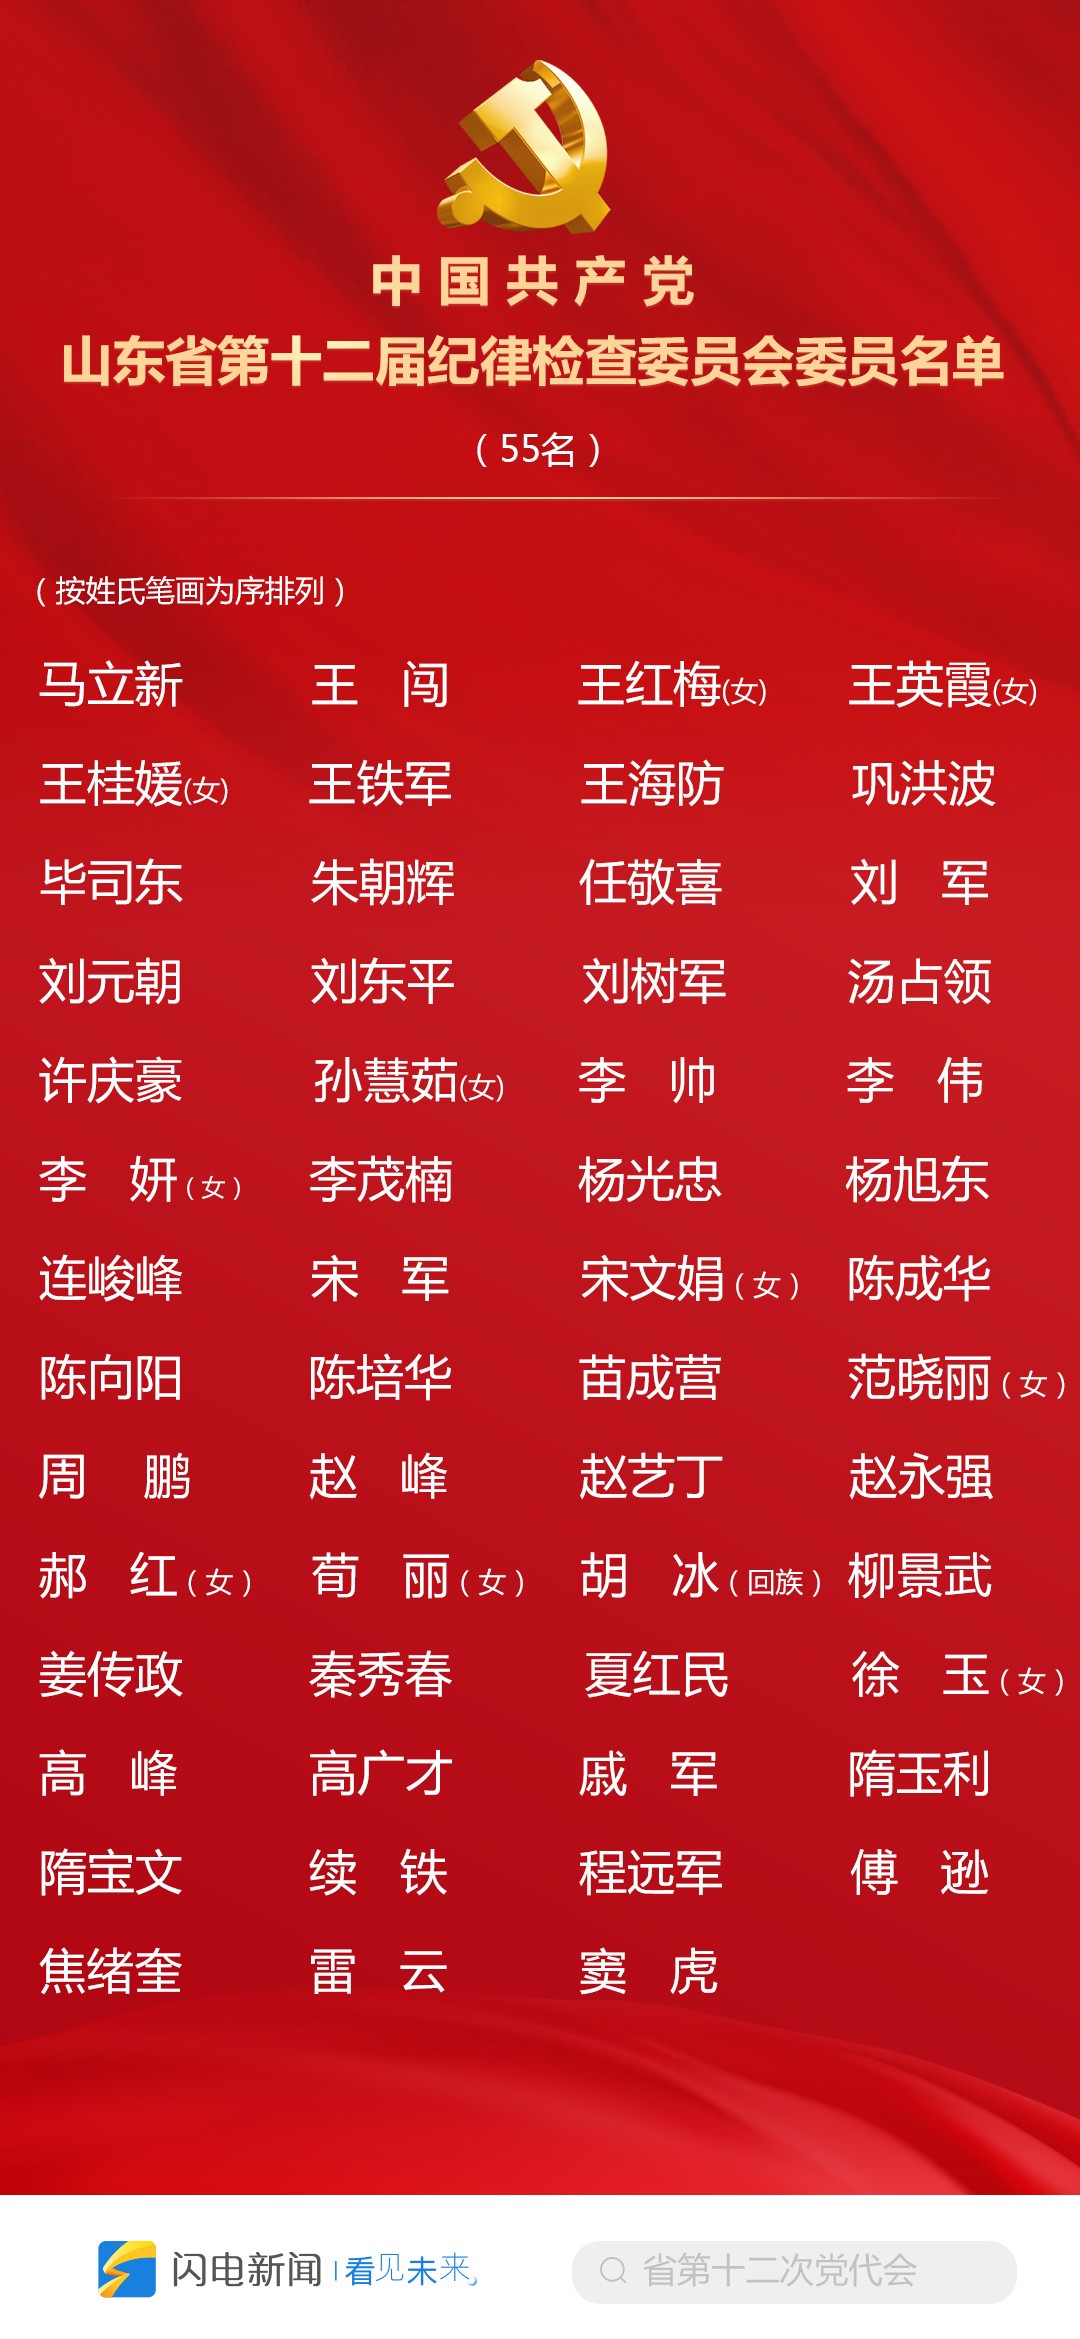 中国共产党山东省第十二届纪律检查委员会委员名单